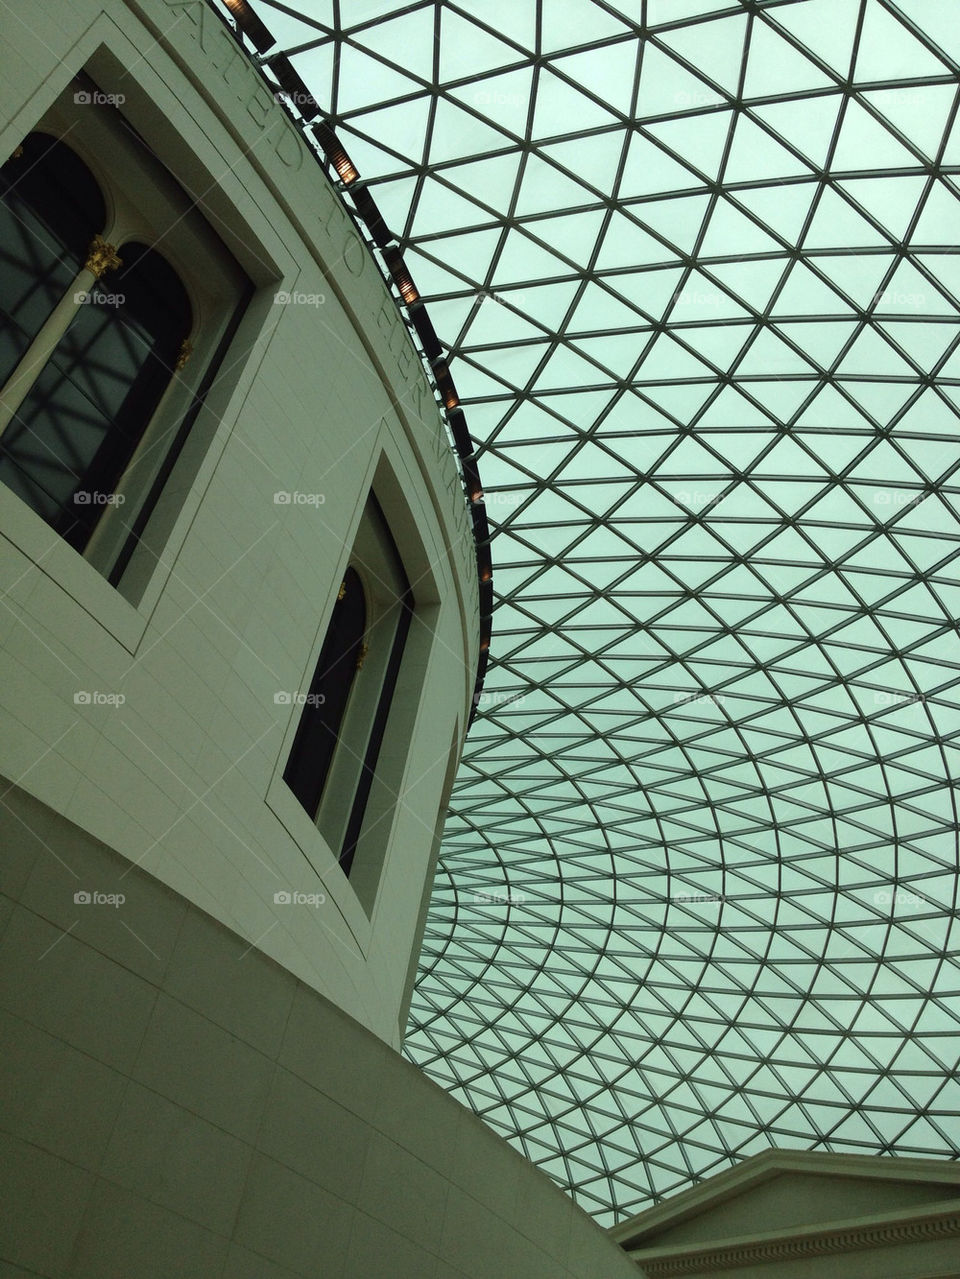 glass london architecture museum by kikicheeky